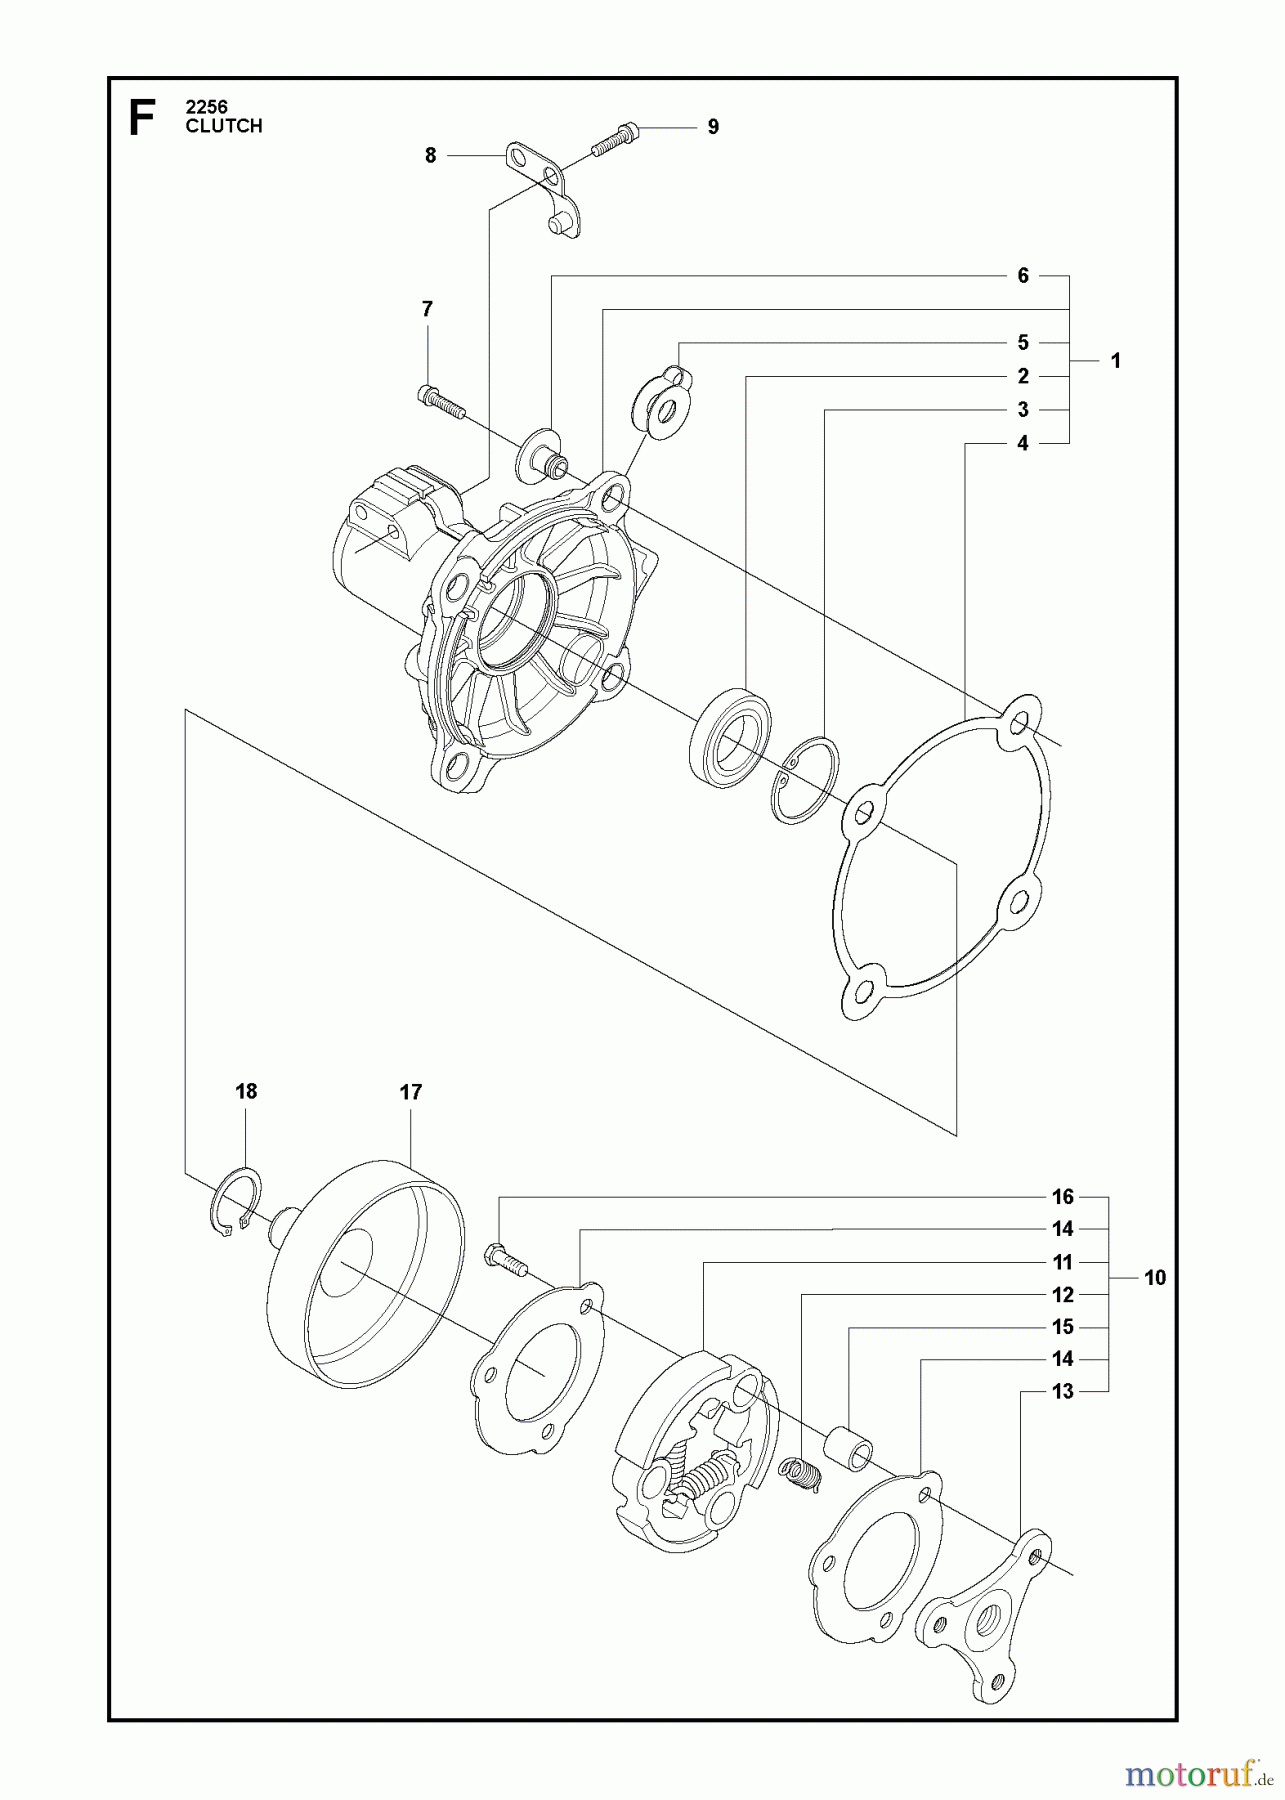  Jonsered Motorsensen, Trimmer BC2256 - Jonsered Brushcutter (2011-01) CLUTCH